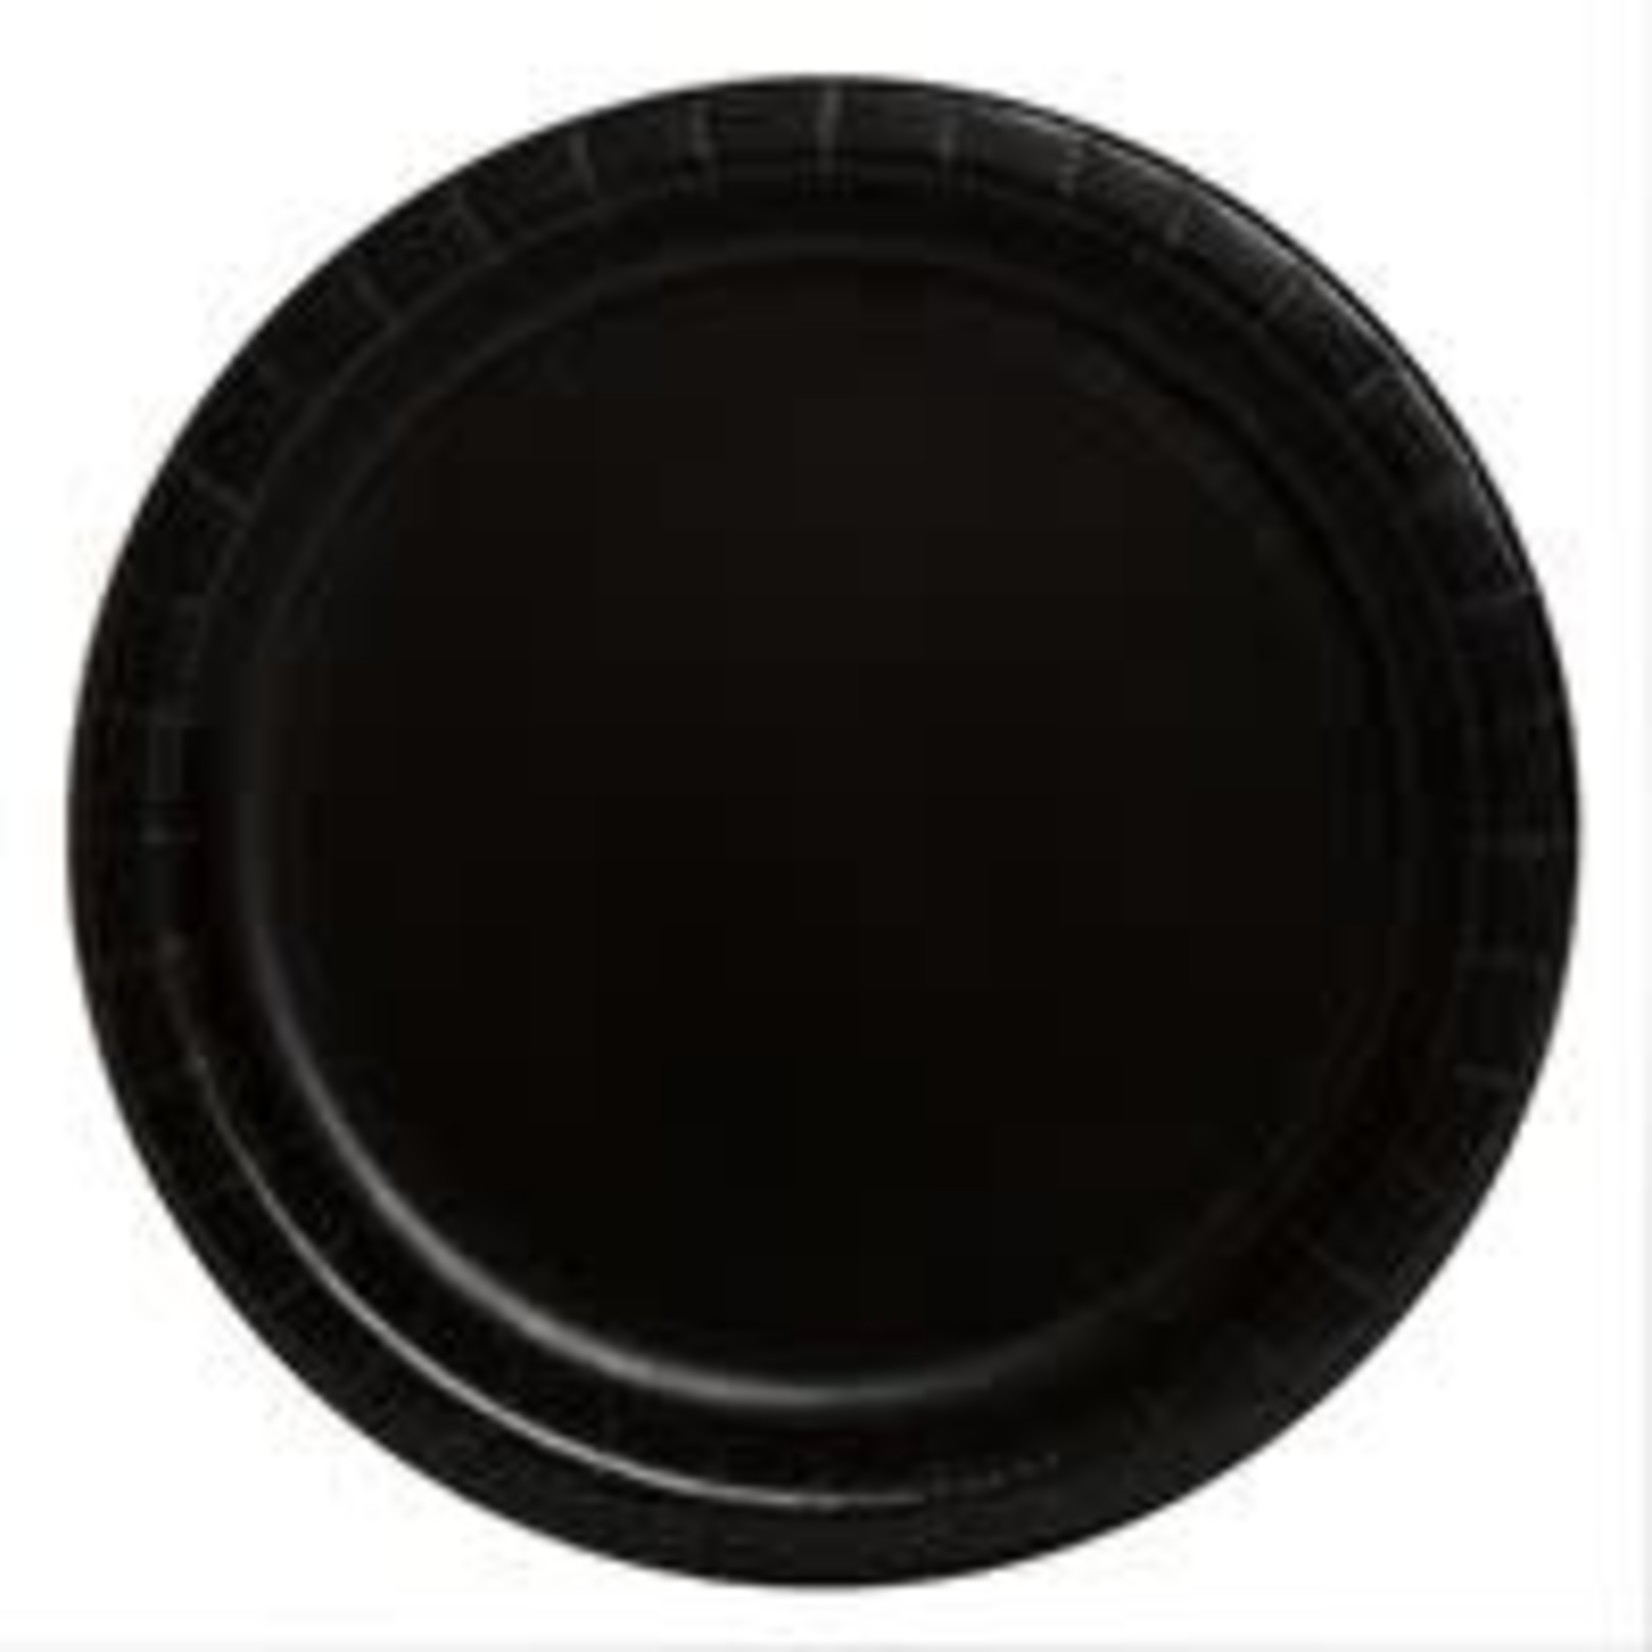 Black Solid Round 7" Dessert Plates 20